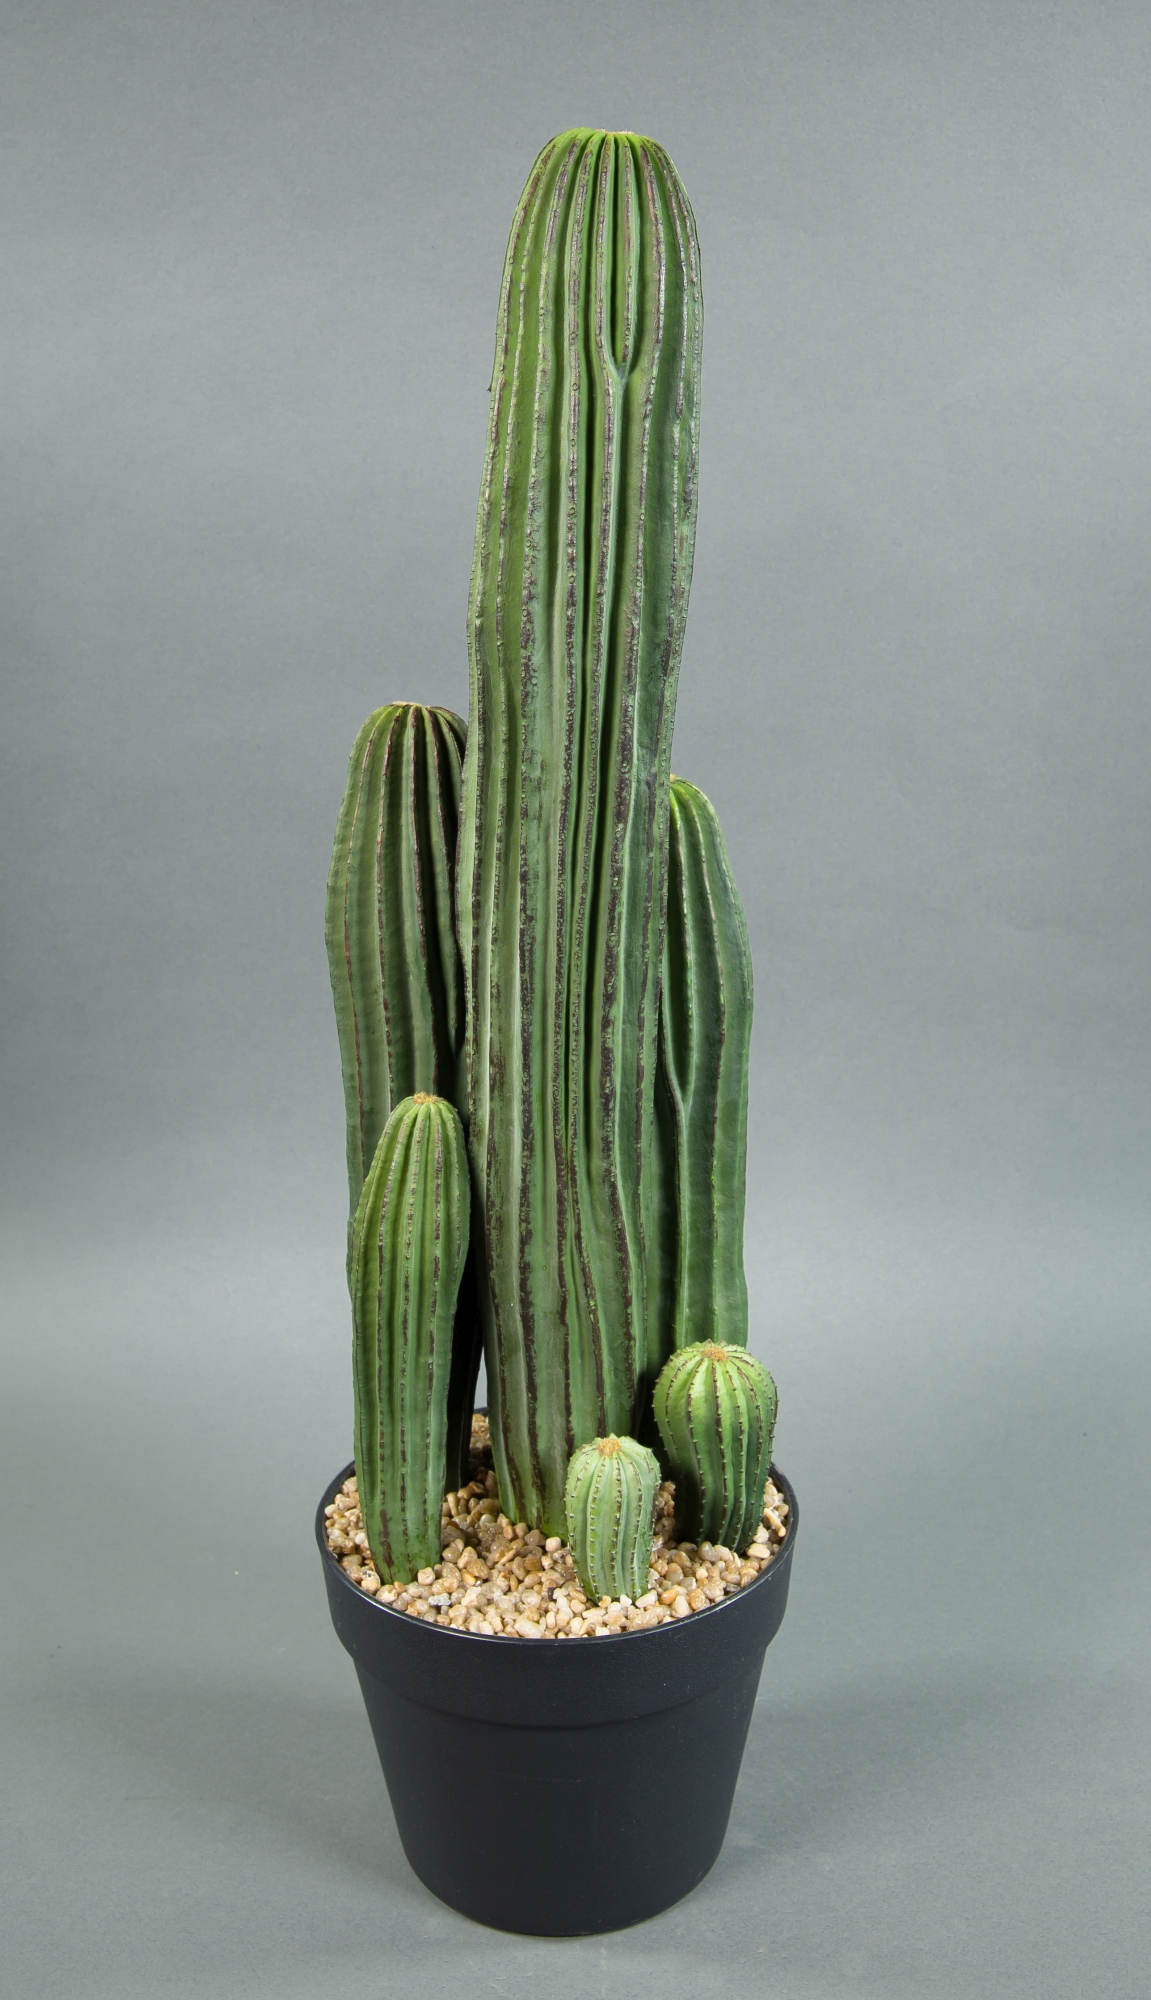 Säulenkaktus 62cm im Topf Kunstpflanzen künstliche künstlicher DP Pflanzen Kakteen Kaktus